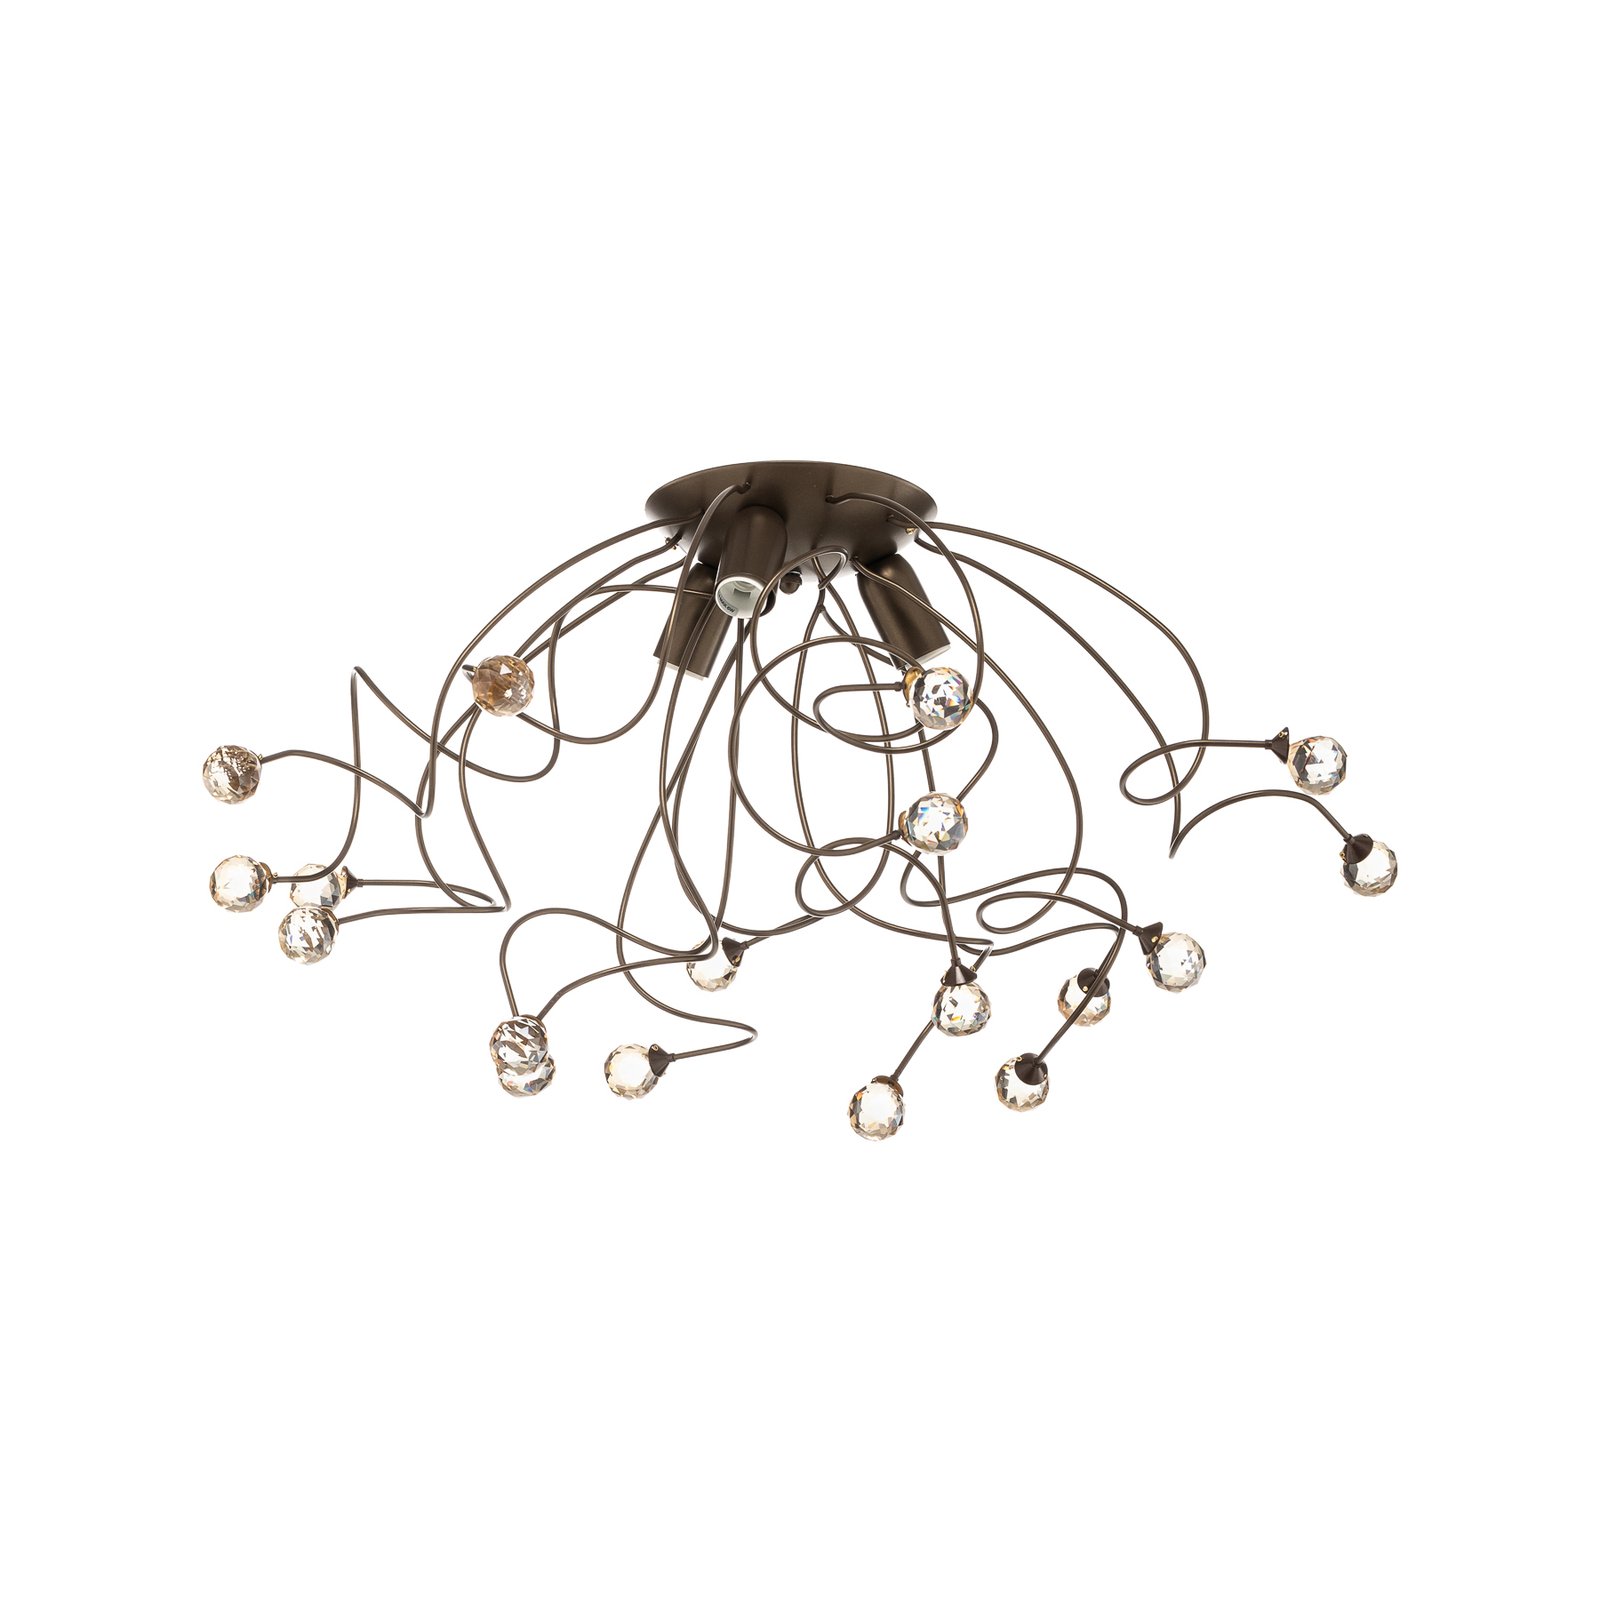 Stropná lampa Trilly v bronzovej farbe s kryštálmi, 3fl.